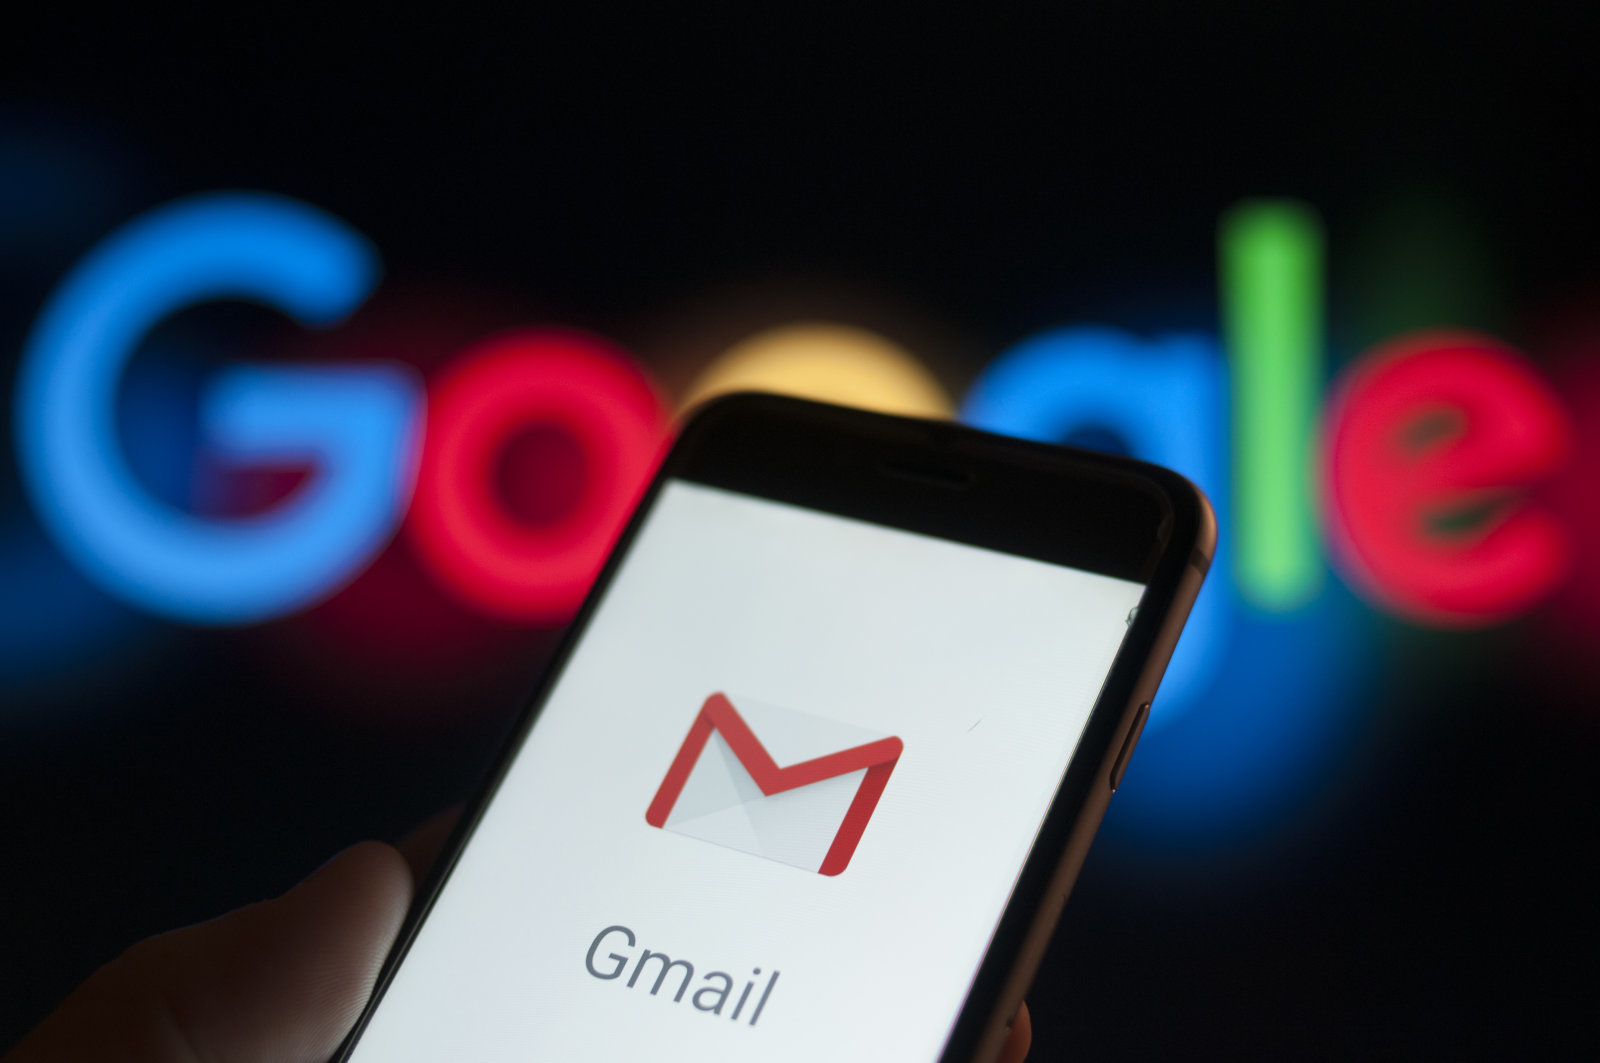 ‘Chế độ bảo mật’ hiện đã có mặt trên Gmail dành cho điện thoại